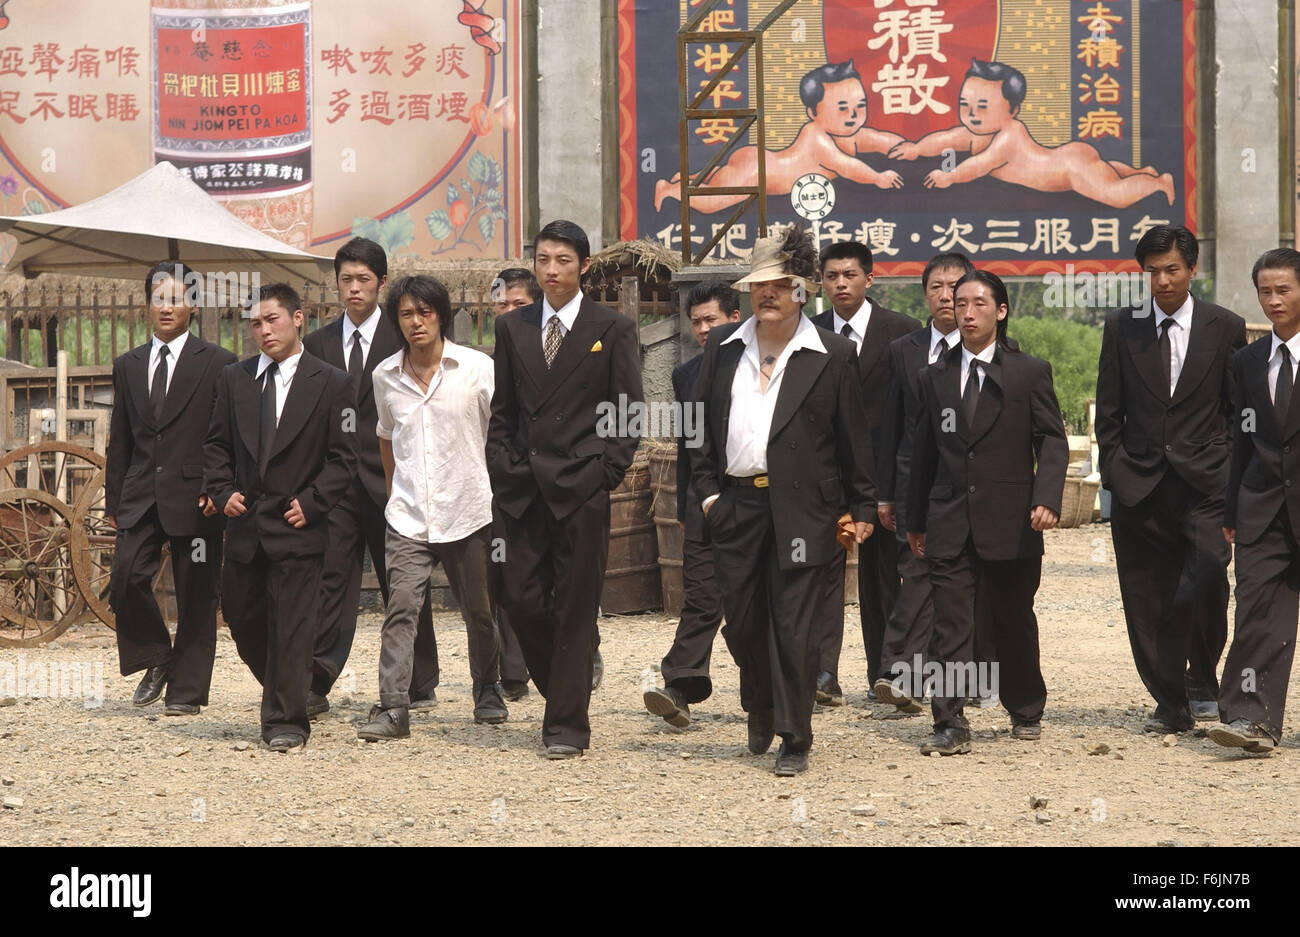 Fecha de lanzamiento: 22 de abril de 2005. Película: Kung Fu Sión. Estudio:  Taihe Film. Parcela: Establecido en el Cantón, China, en 1940, la historia  gira en una ciudad gobernada por la